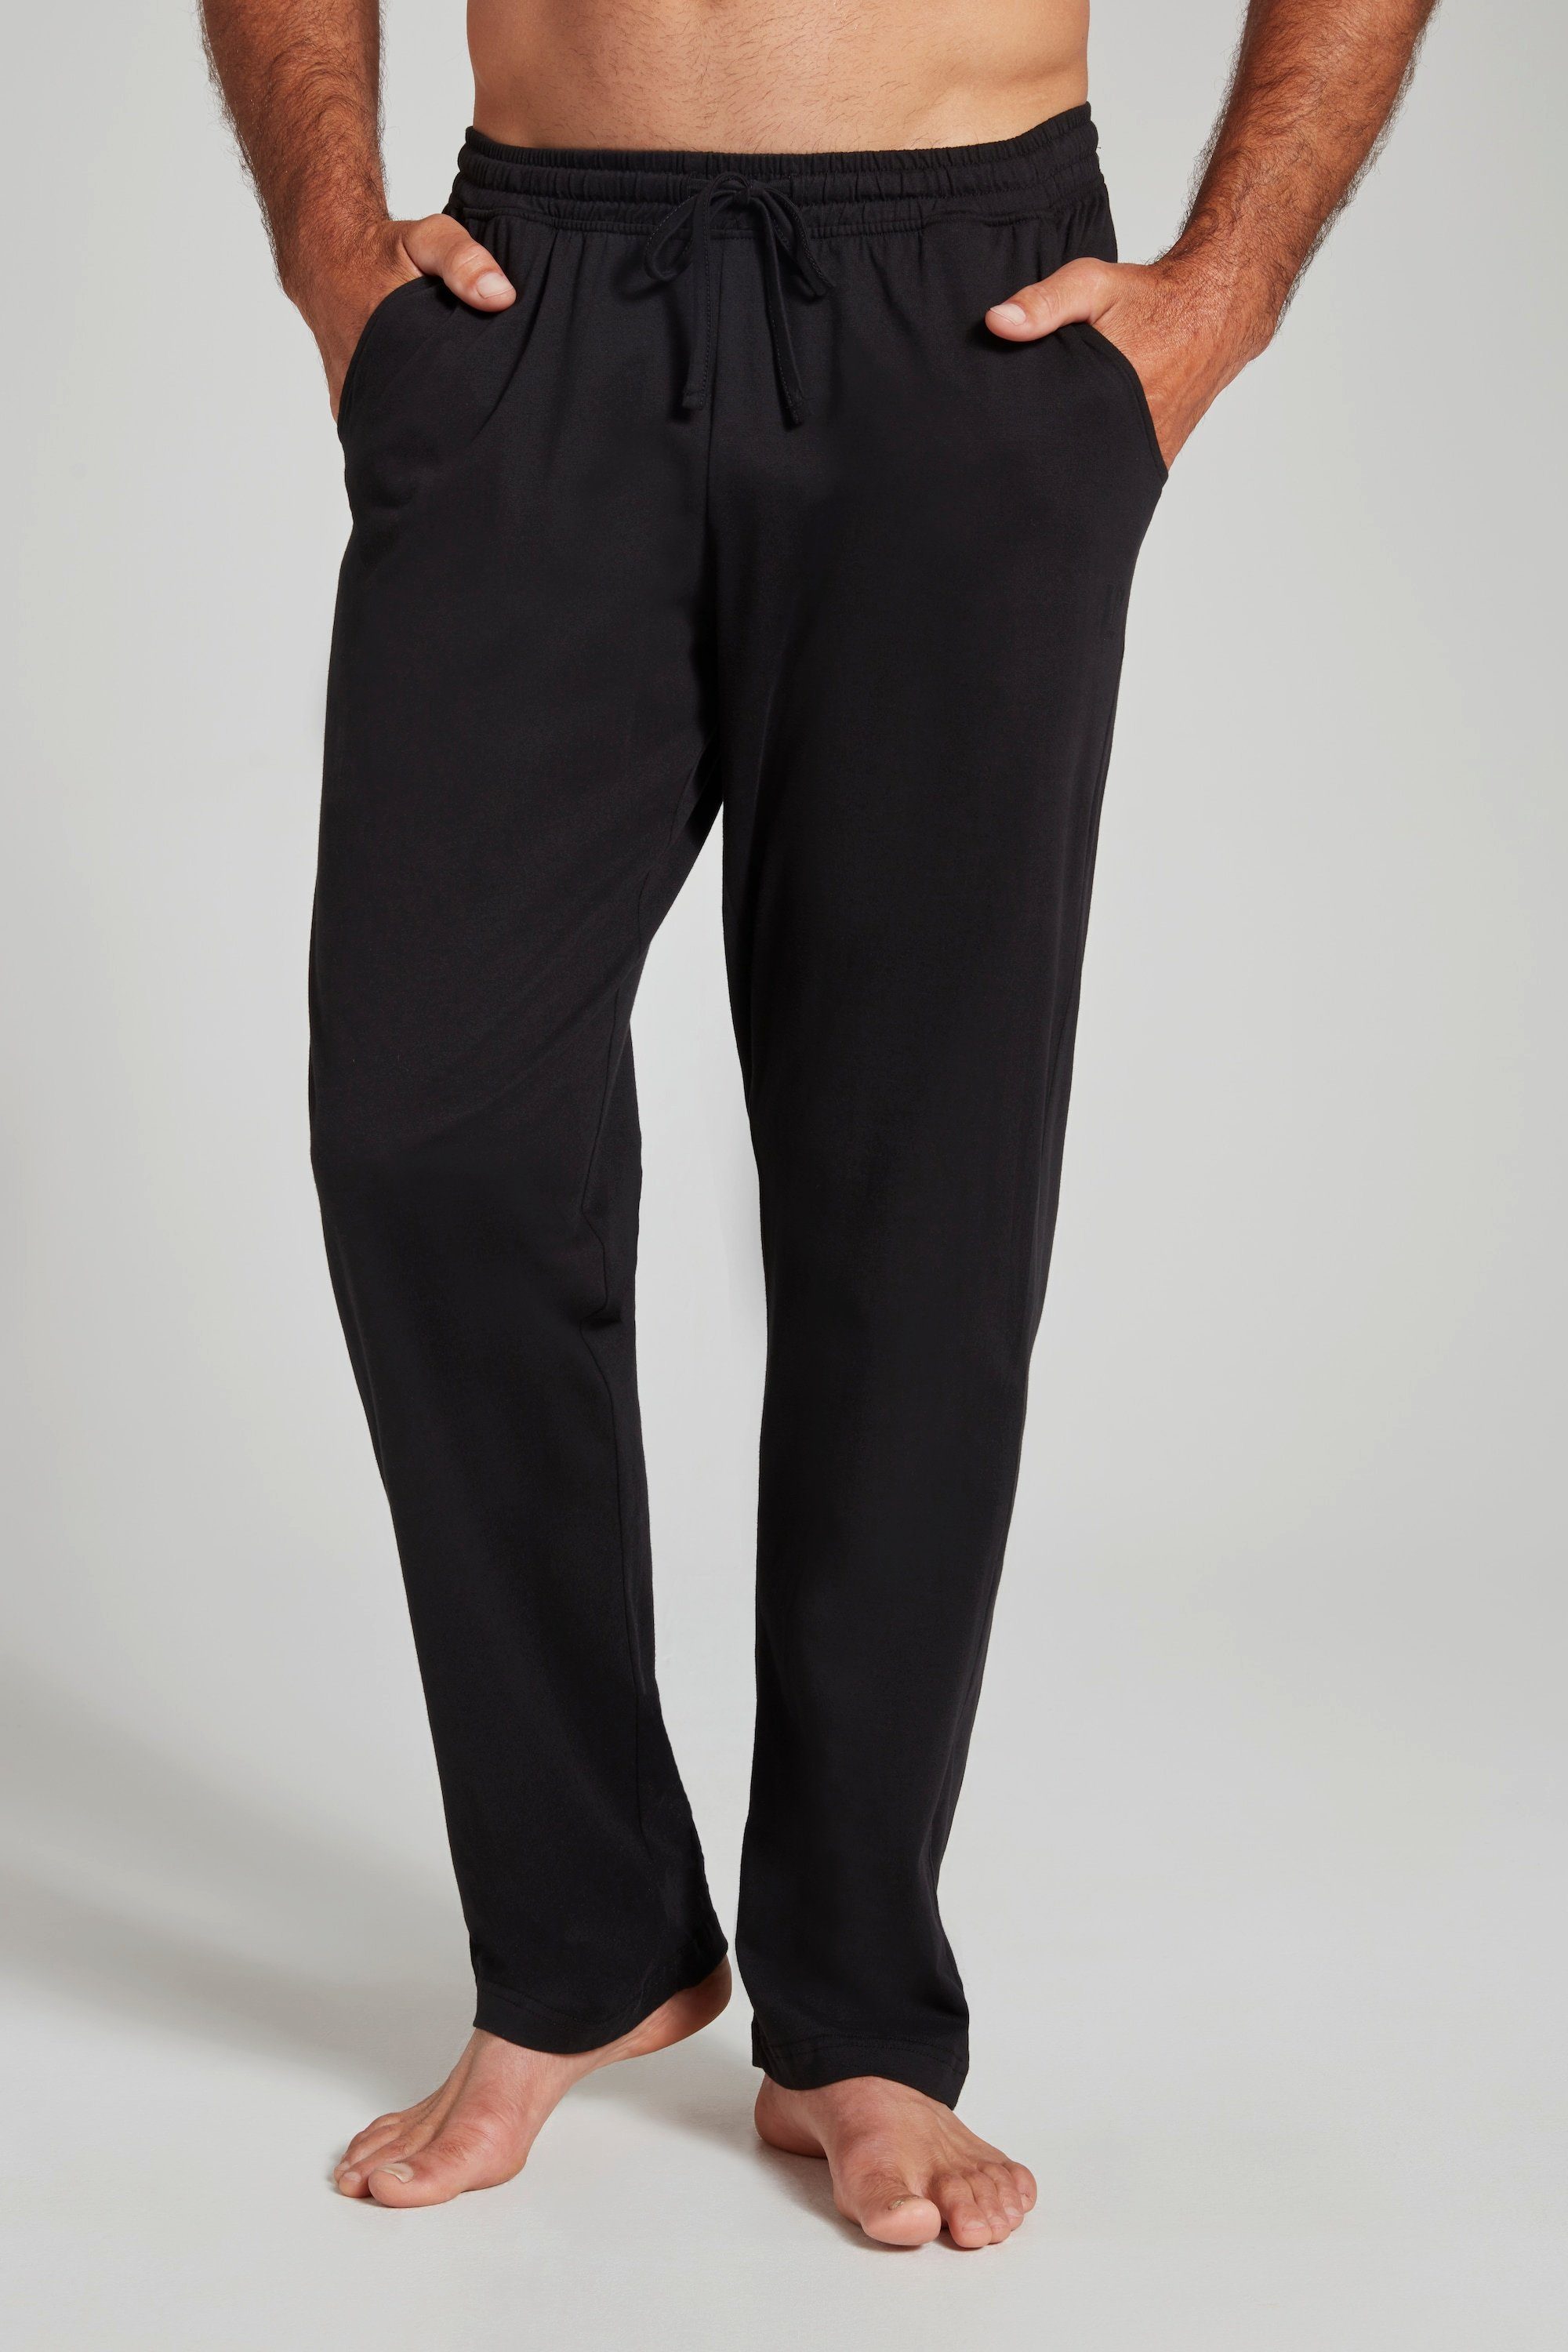 Elastikbund Homewear Schlafanzug-Hose schwarz Form JP1880 lange Schlafanzug